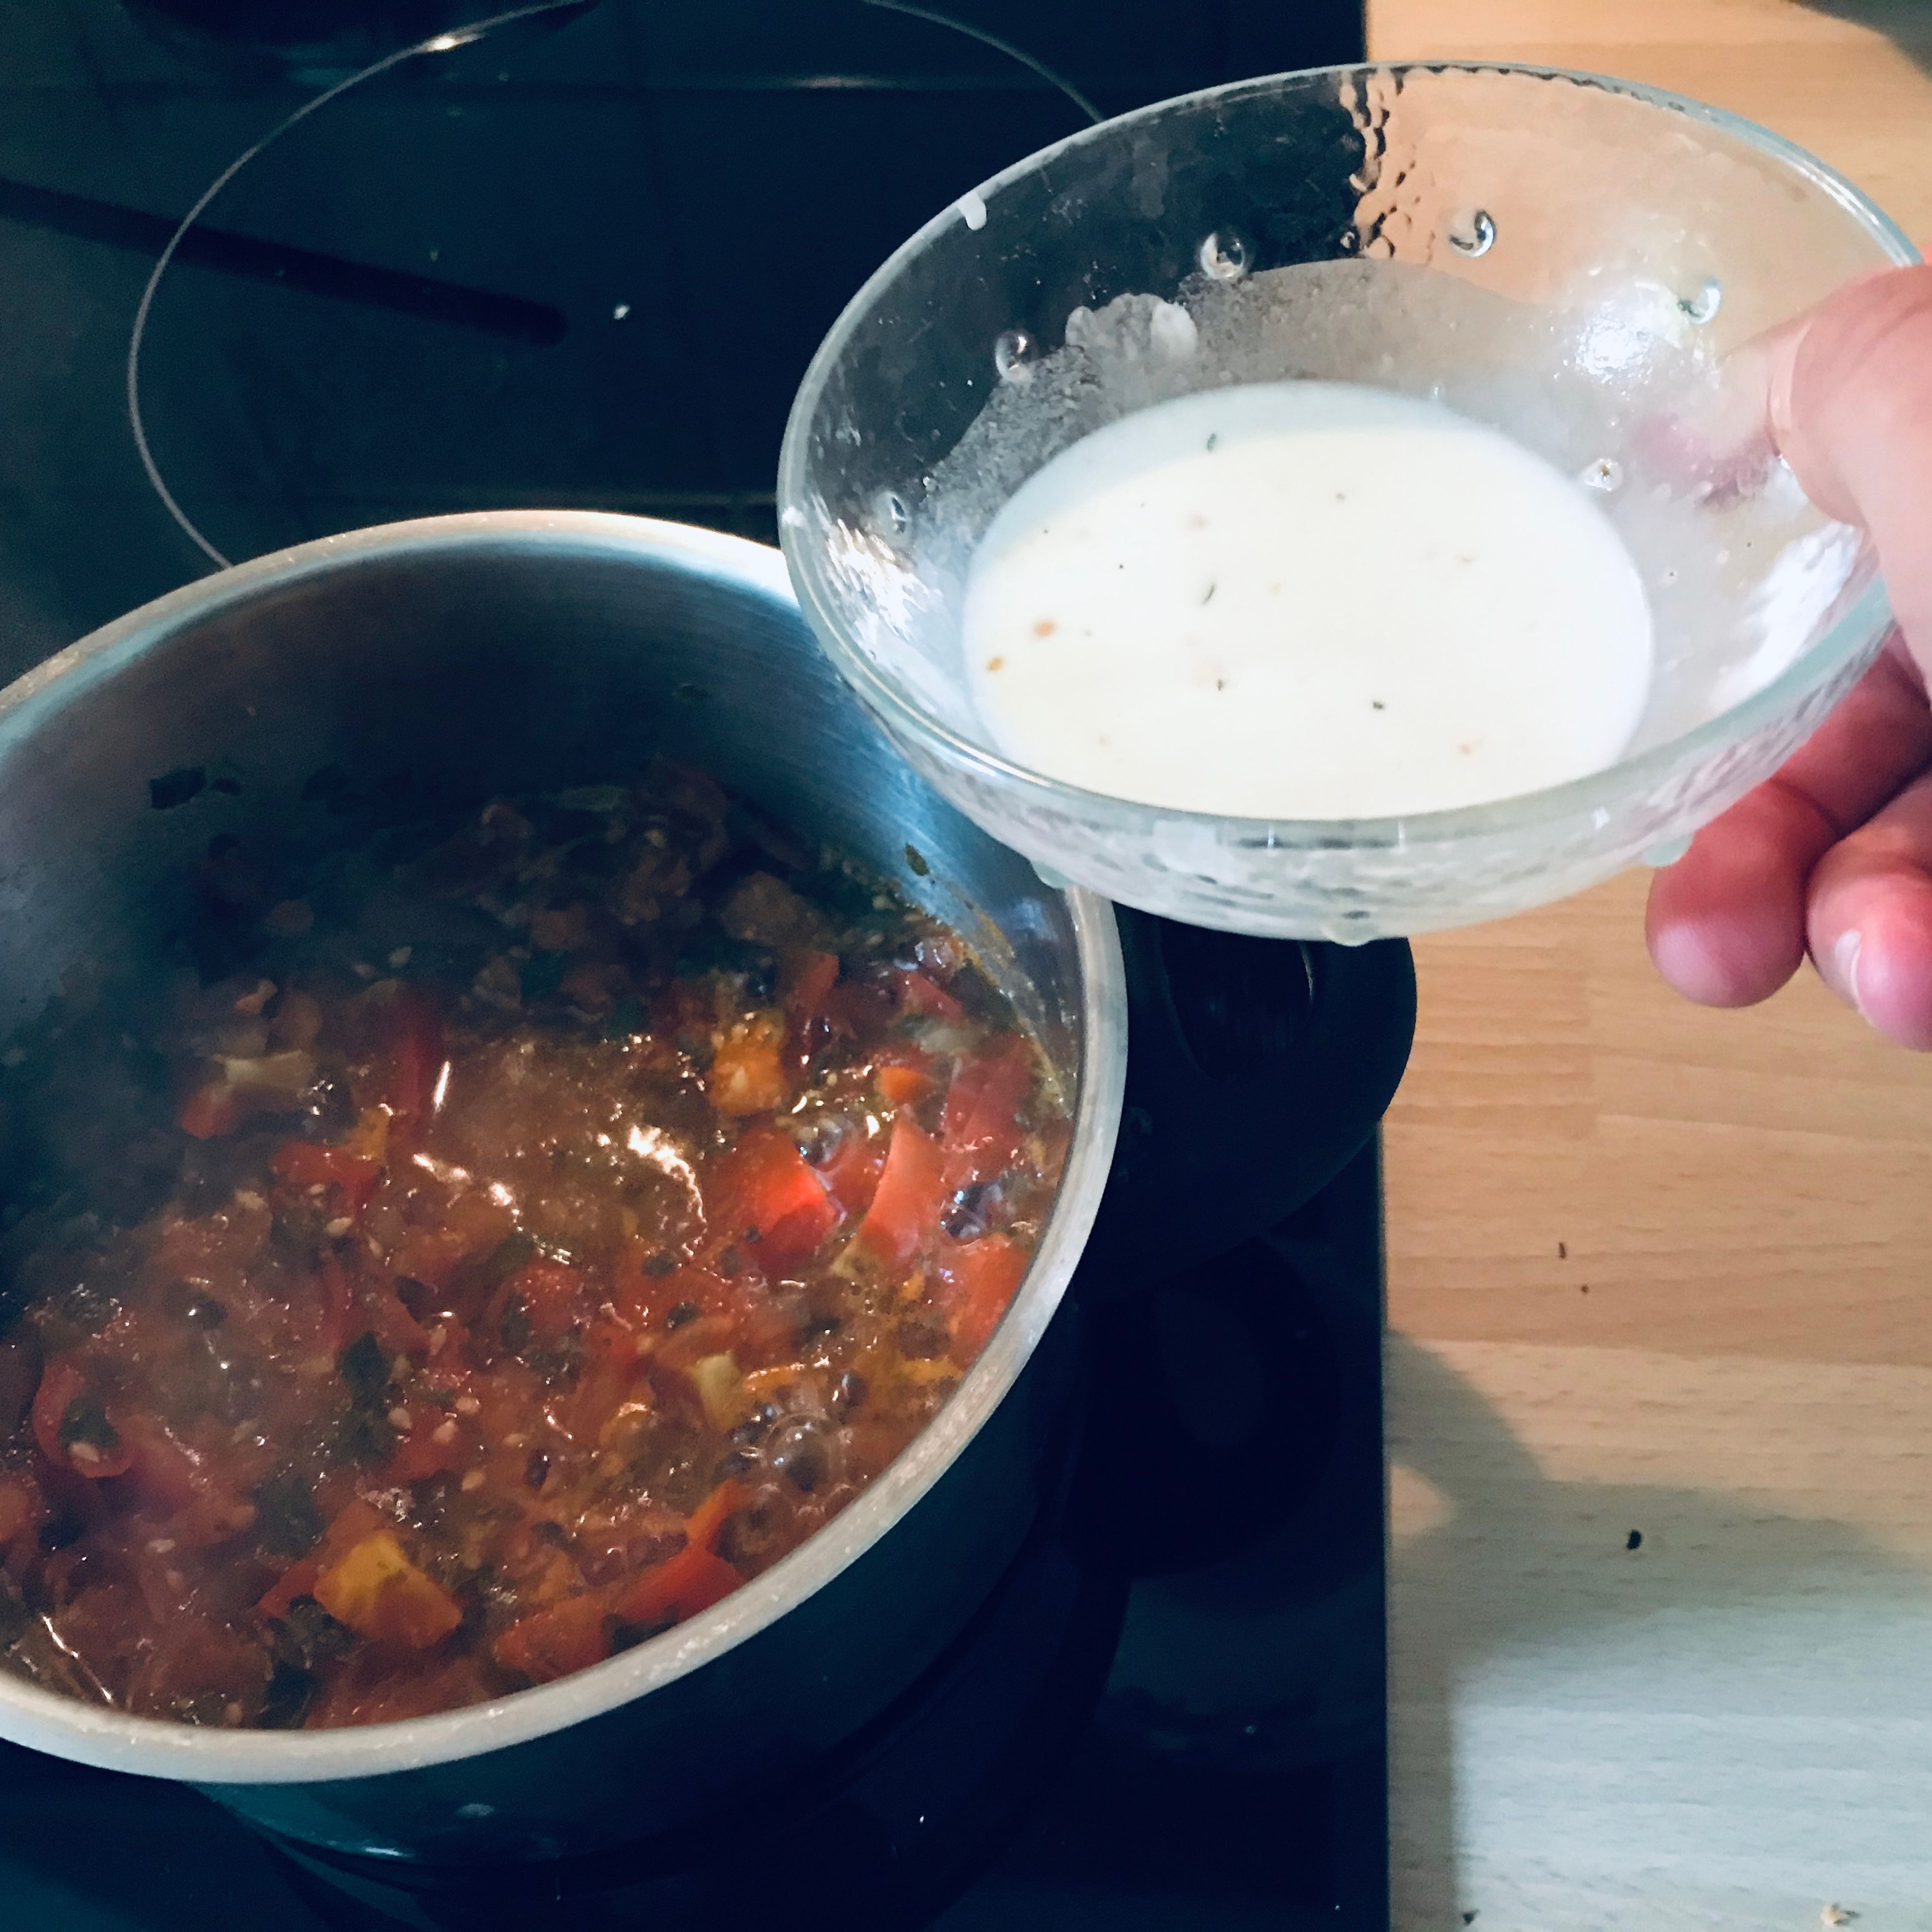 Anschließend die Speisestärke in etwas Wasser auflösen und den Topf von der Herdplatte nehmen. Die Speisestärke unter ständigen Rühren in den Topf geben und anschließend die Tomaten nochmals aufkochen lassen.